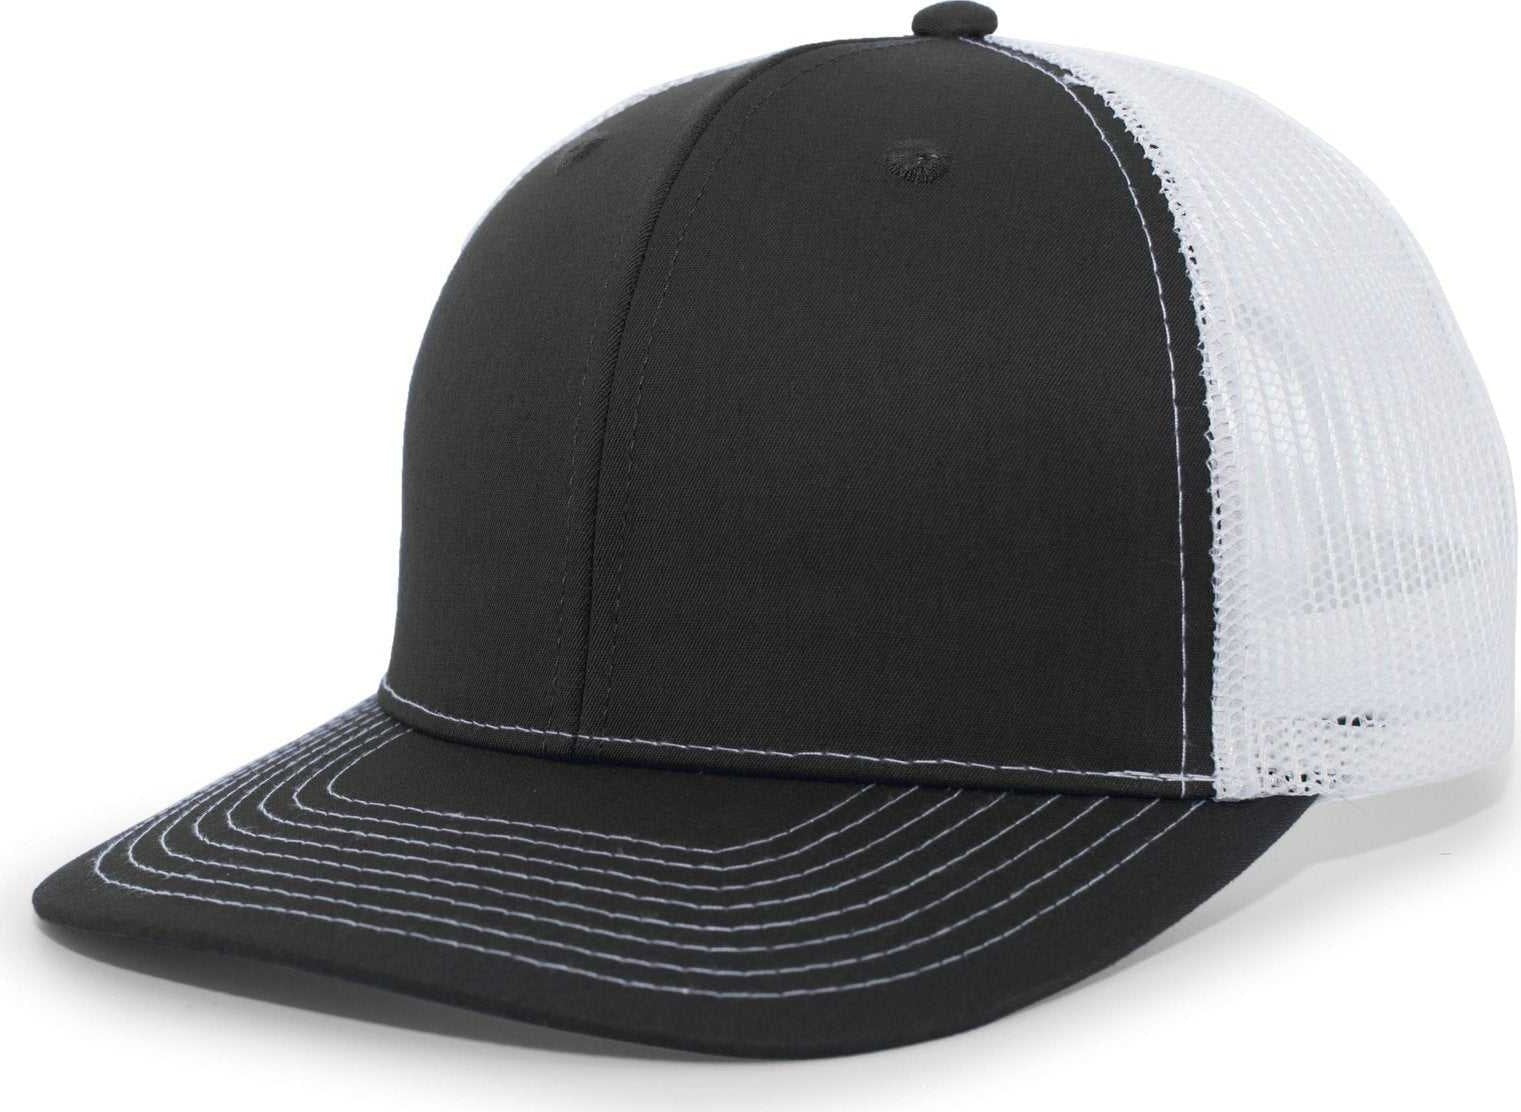 Pacific Headwear PE10 Trucker Snapback Cap - Black White - HIT a Double